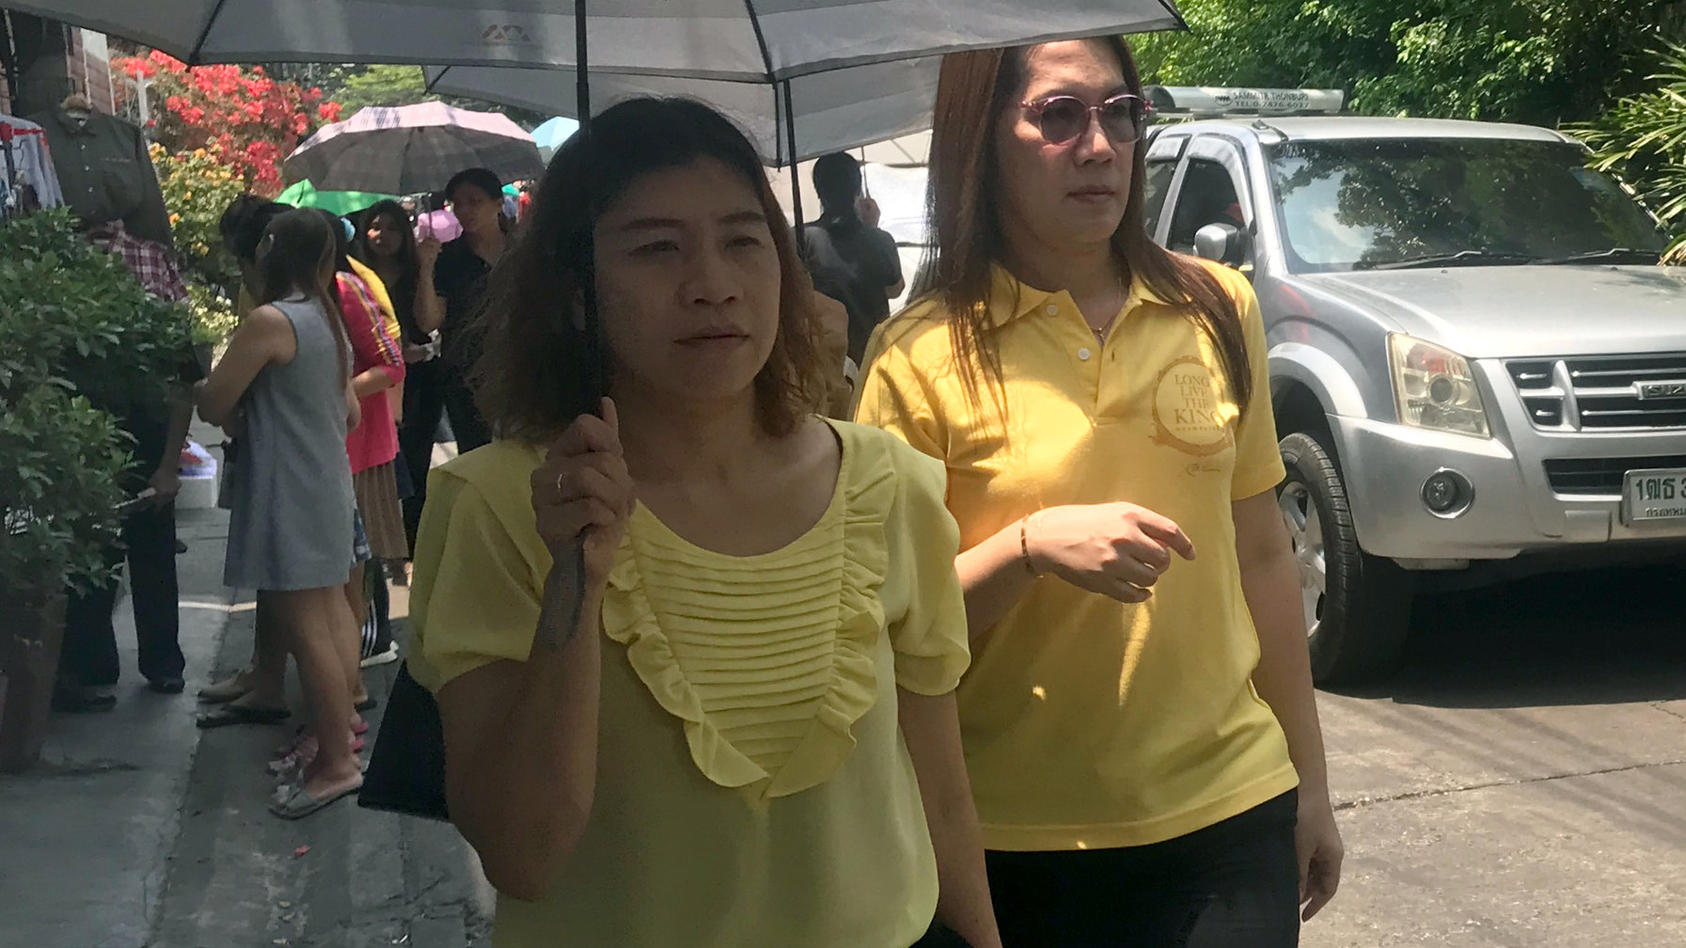 01.04.2019, Thailand, Bangkok: Passanten sind in gelber Kleidung auf einer Straße in der Hauptstadt unterwegs.  Zu Ehren ihres bislang noch ungekrönten Königs M. Vajiralongkorn sollen die knapp 70 Millionen Thailänder bis Ende Juli gelbe Kleidung tra